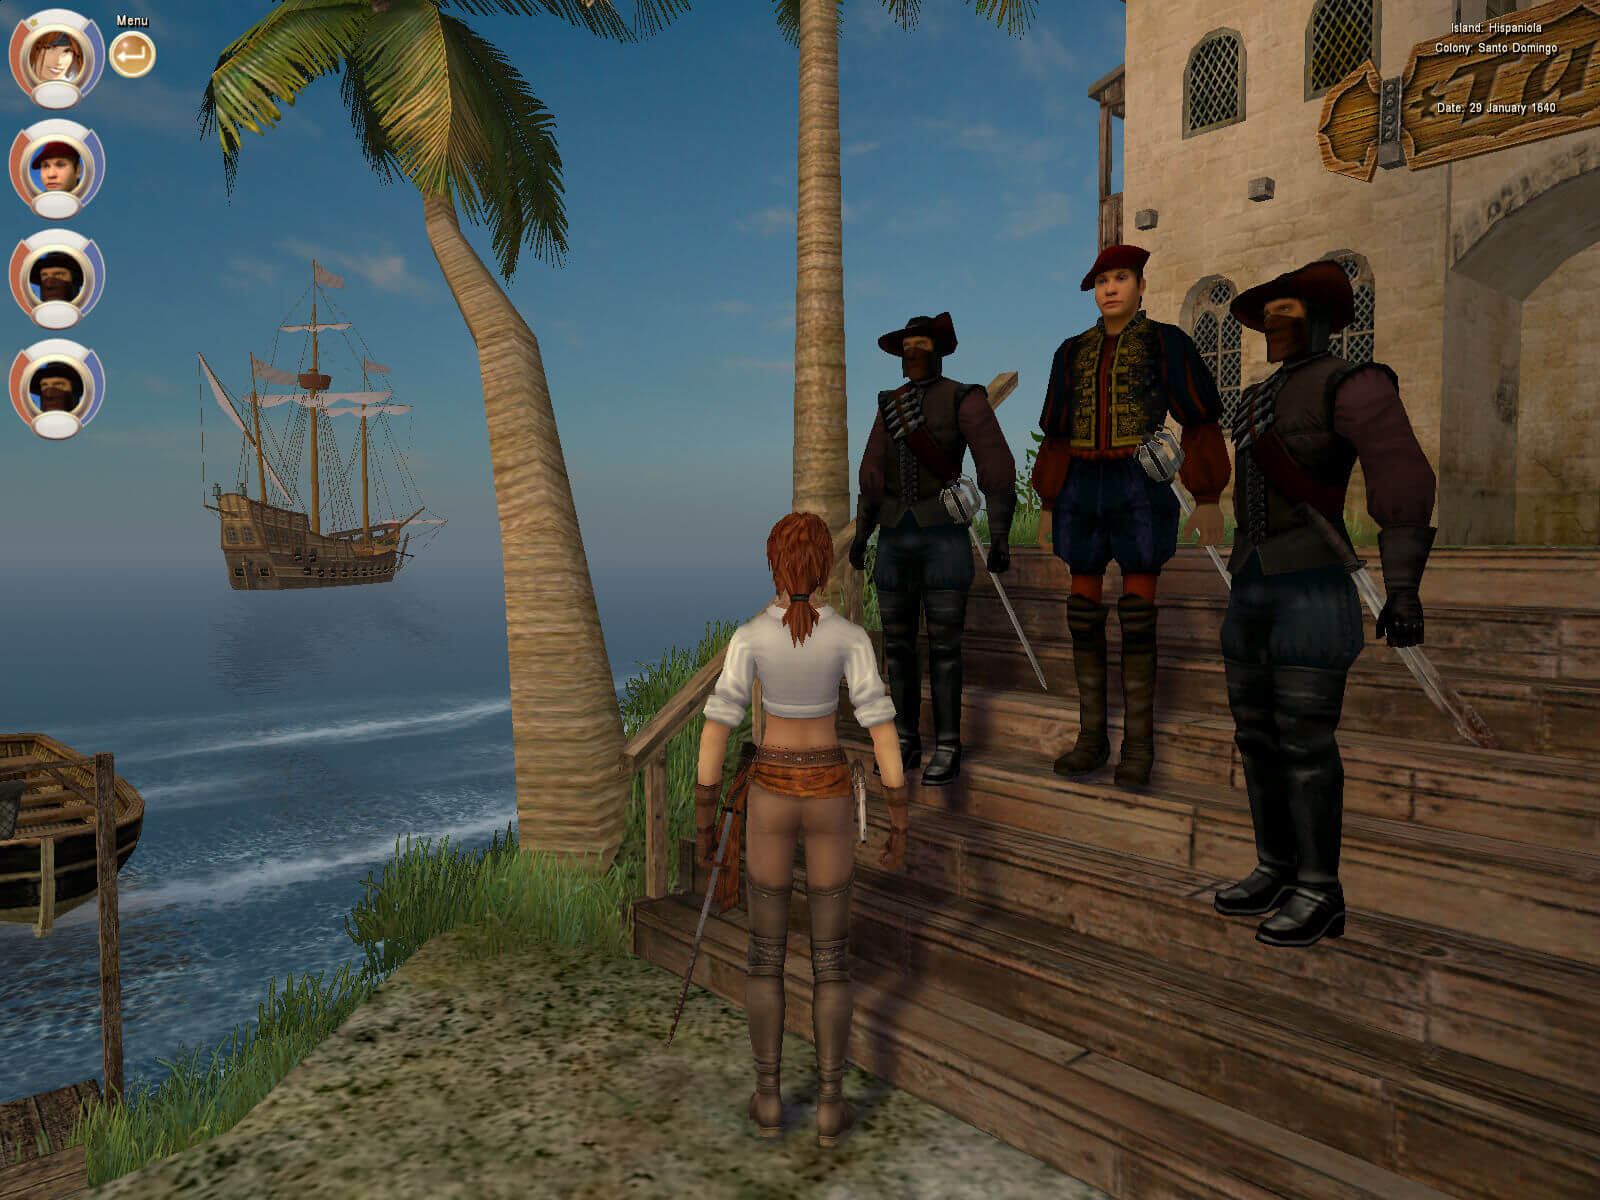 Пираты 1 игра. Корсары 3 пираты Карибского моря. Корсары III (2005). Age of Pirates: Caribbean Tales игра. Натаниэль Хаук Корсары 2.